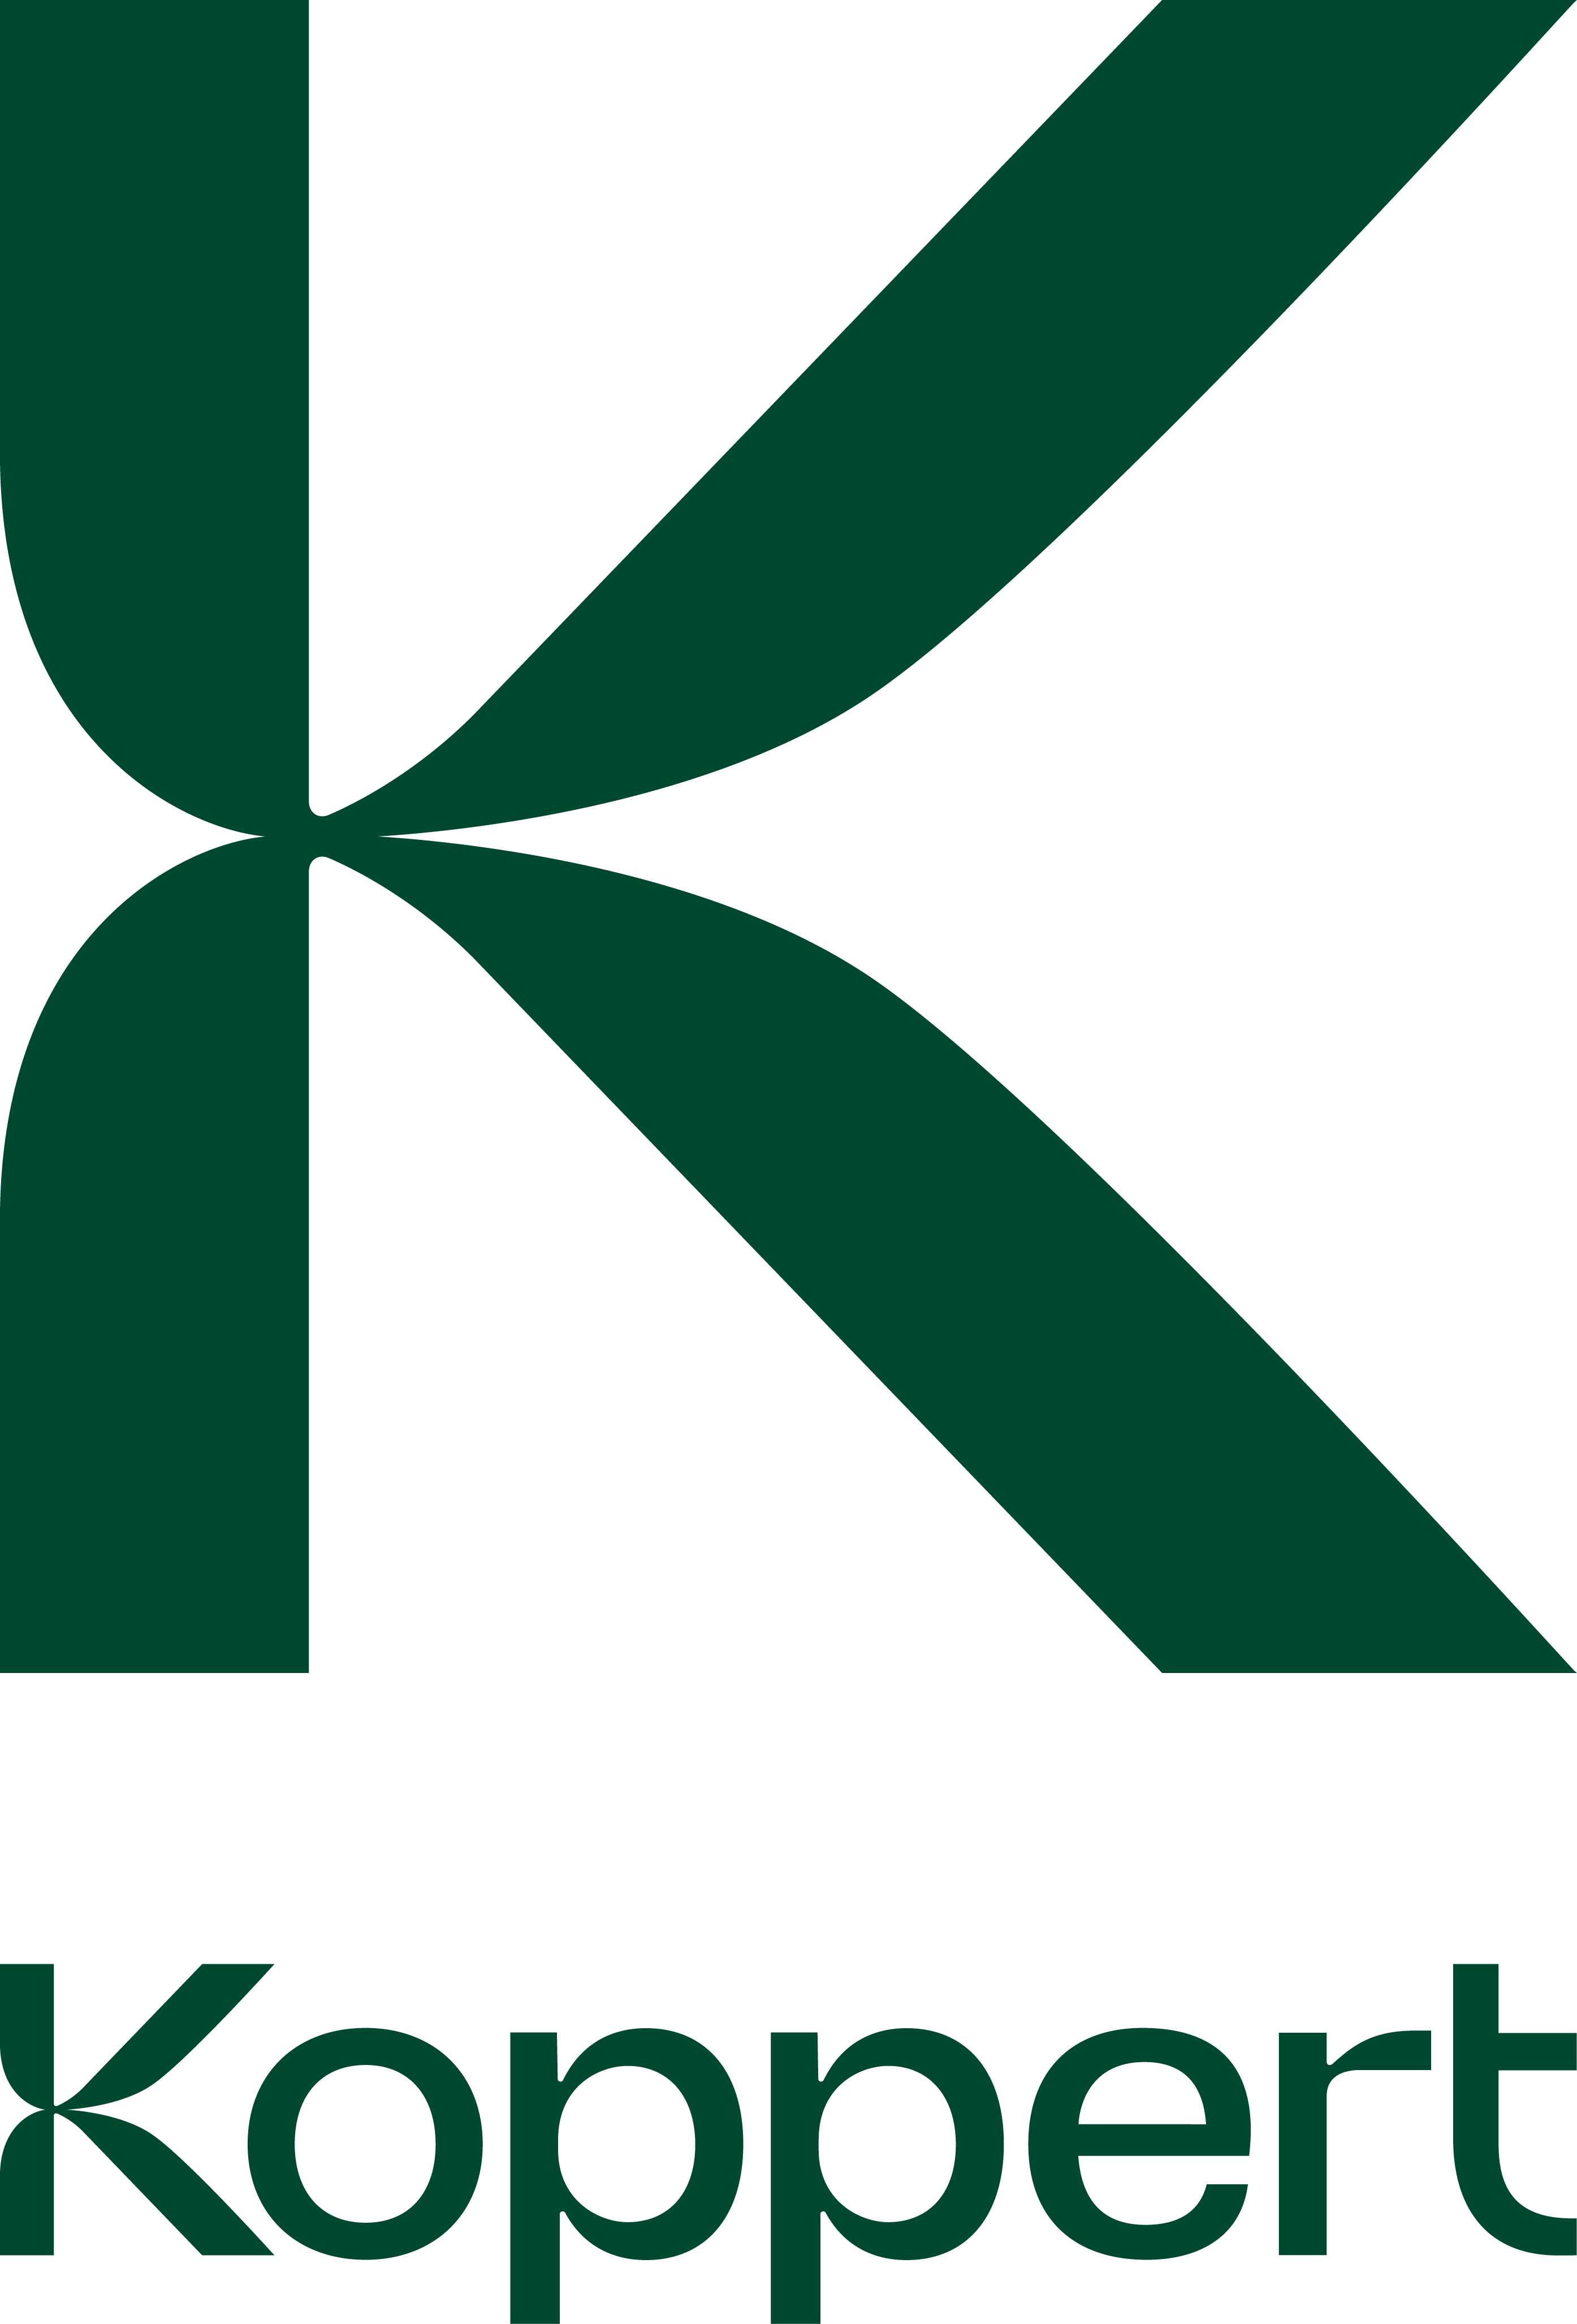 Koppert_Primary Logo__Koppert_Green_DIGITAL USE ONLY